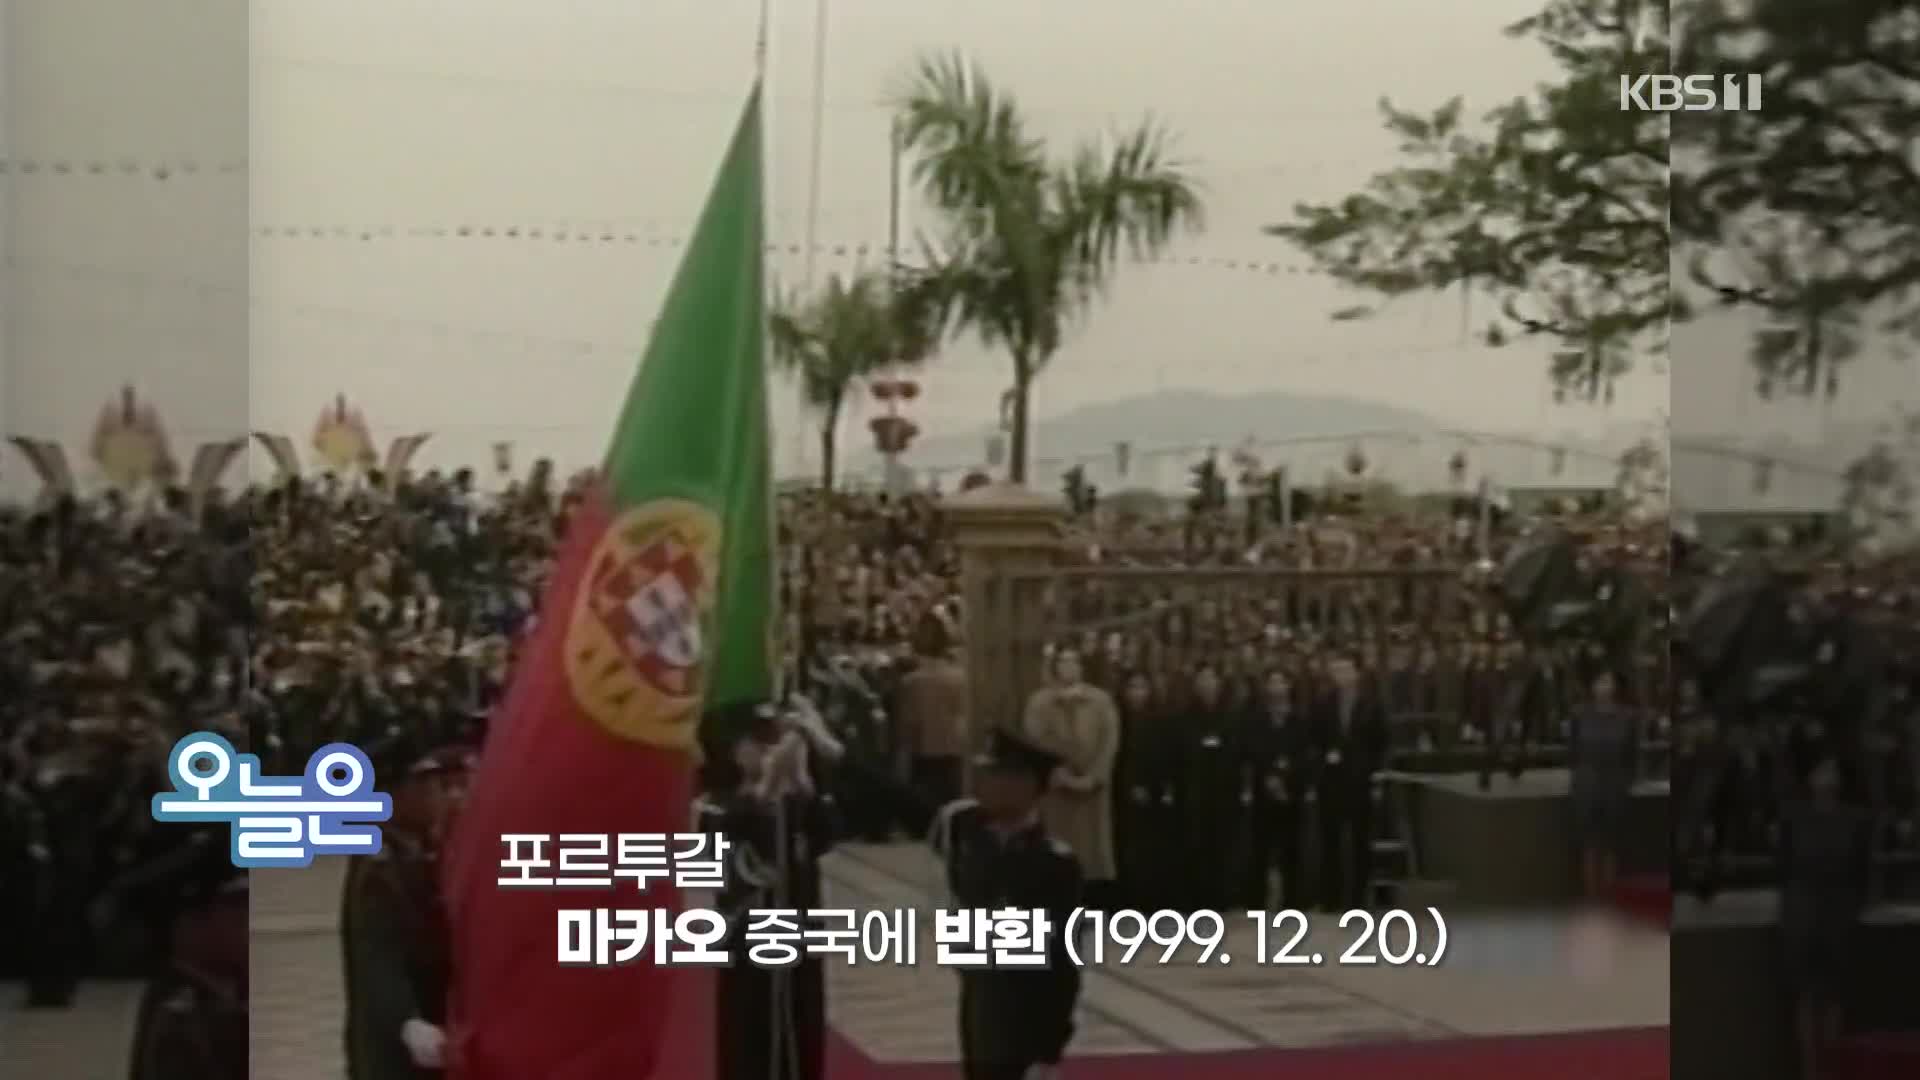 [오늘은] 포르투갈 마카오 중국에 반환 (1999. 12. 20.)